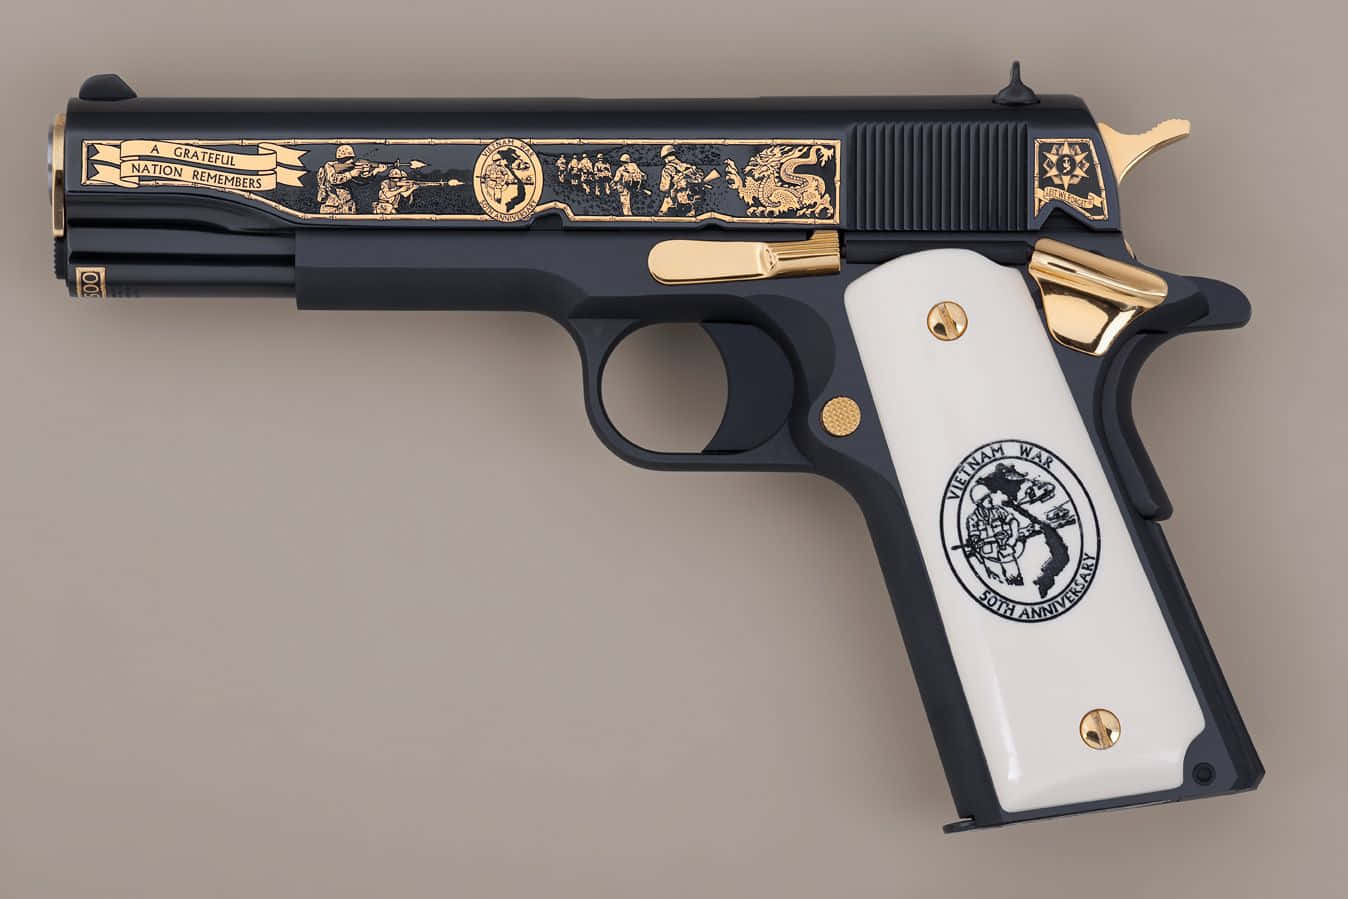 Black Gold Pistol Handgun Picture